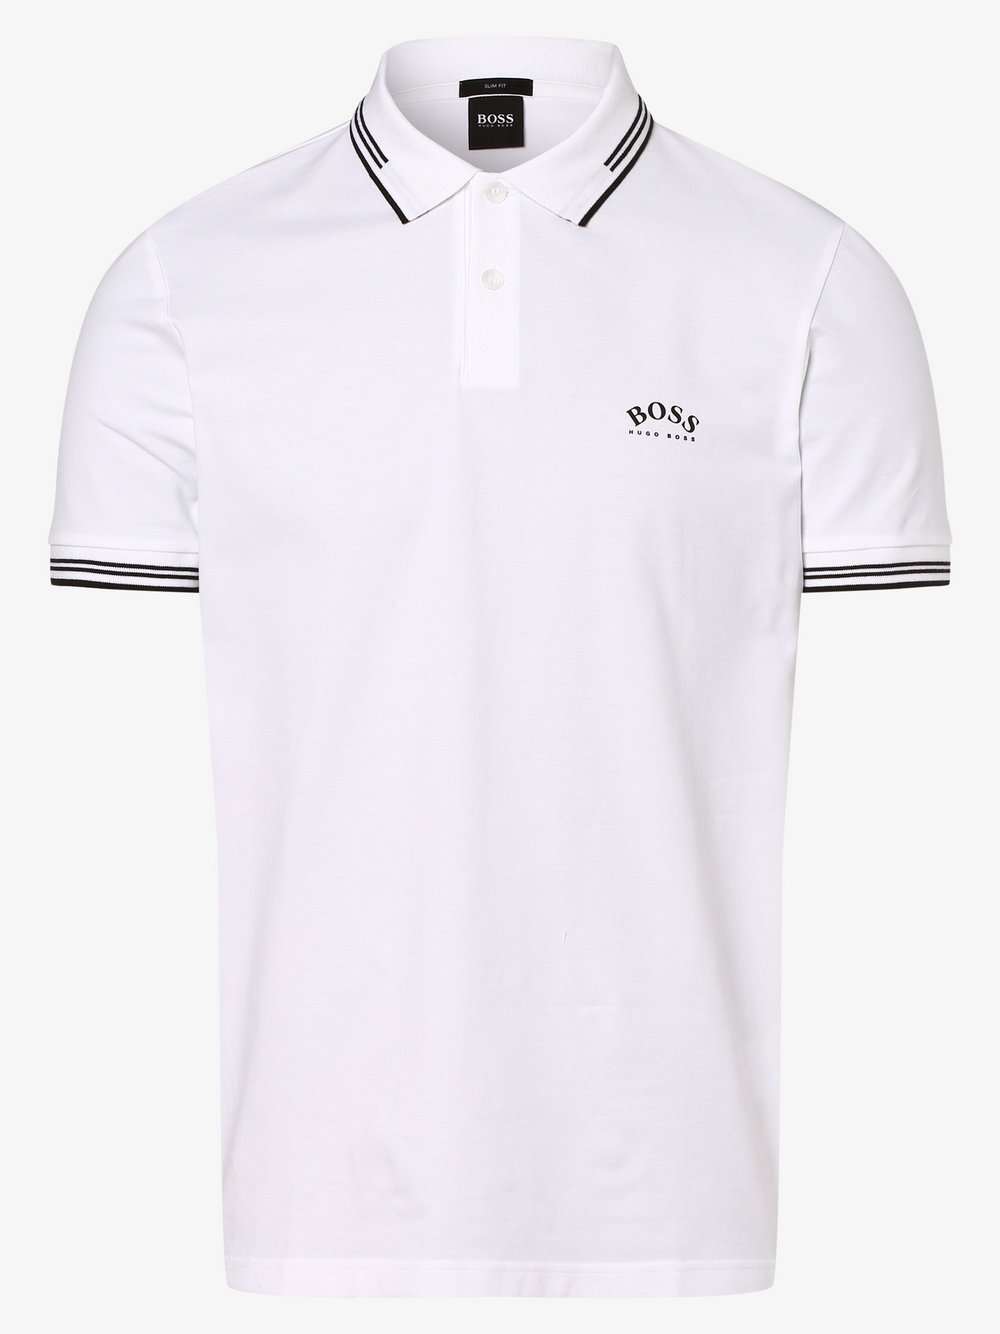 BOSS Athleisure - Męska koszulka polo – Paul Curved, biały